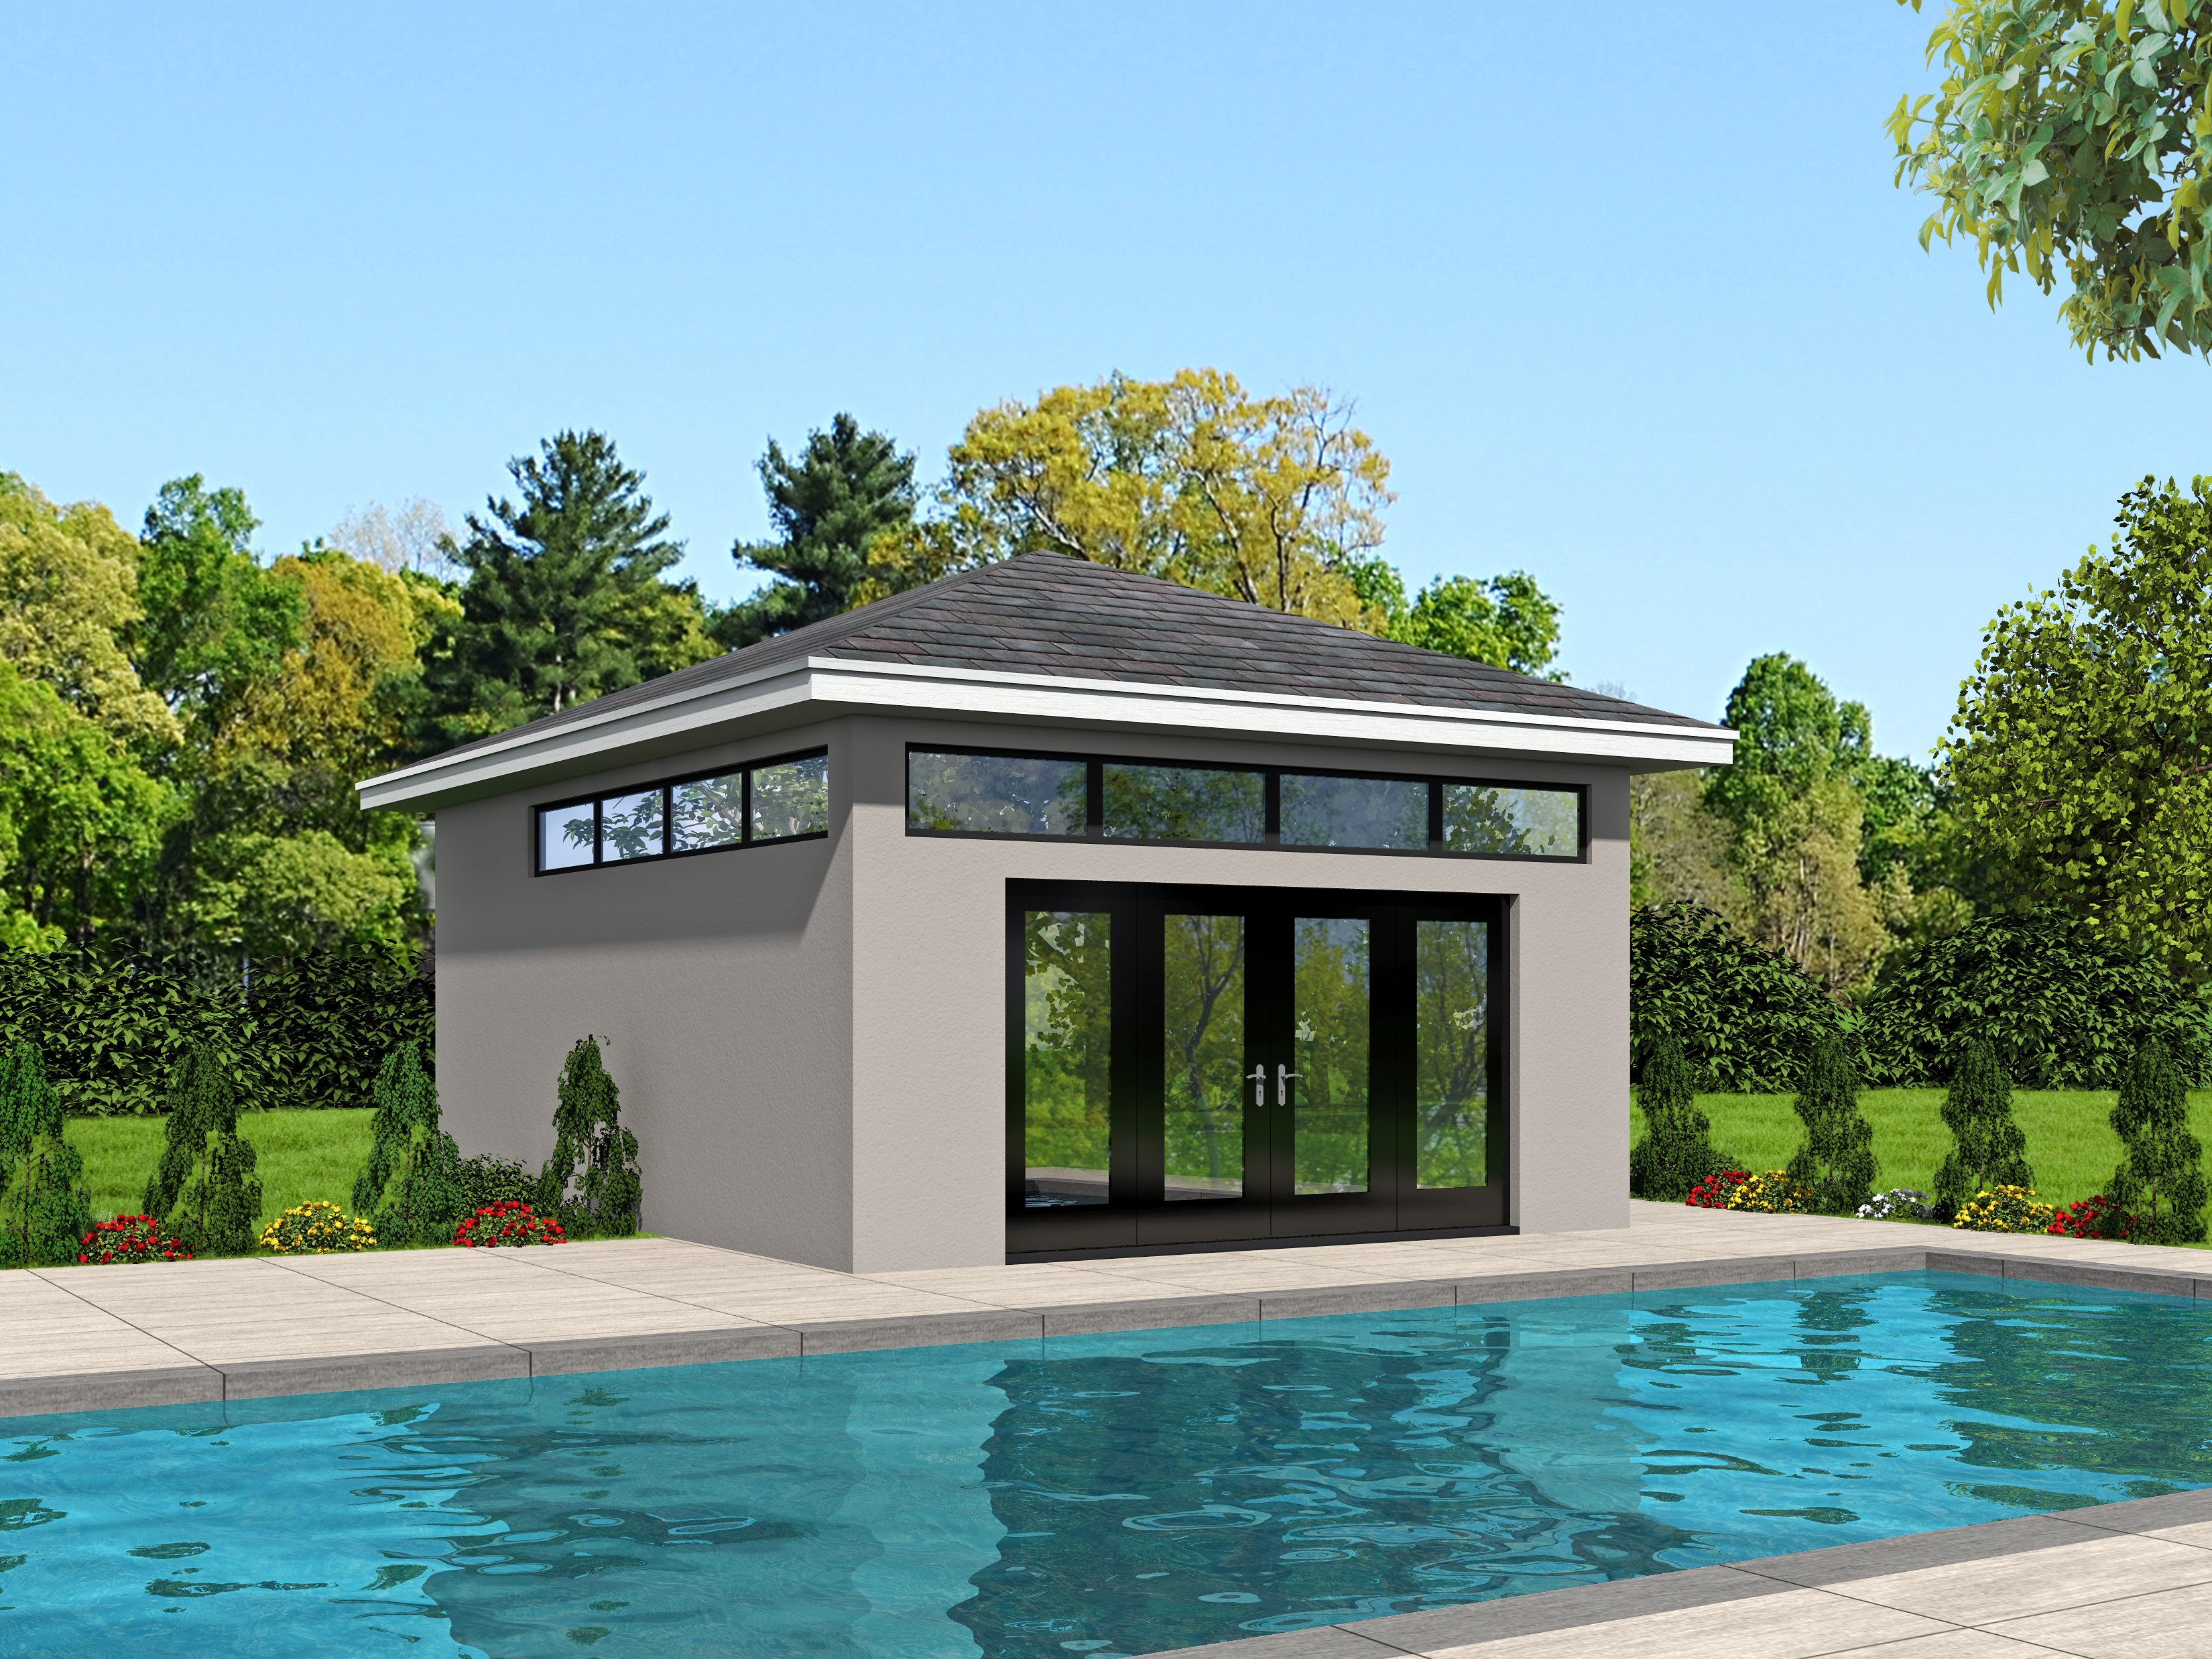  Pool  House  Plans  House  Plans  Plus